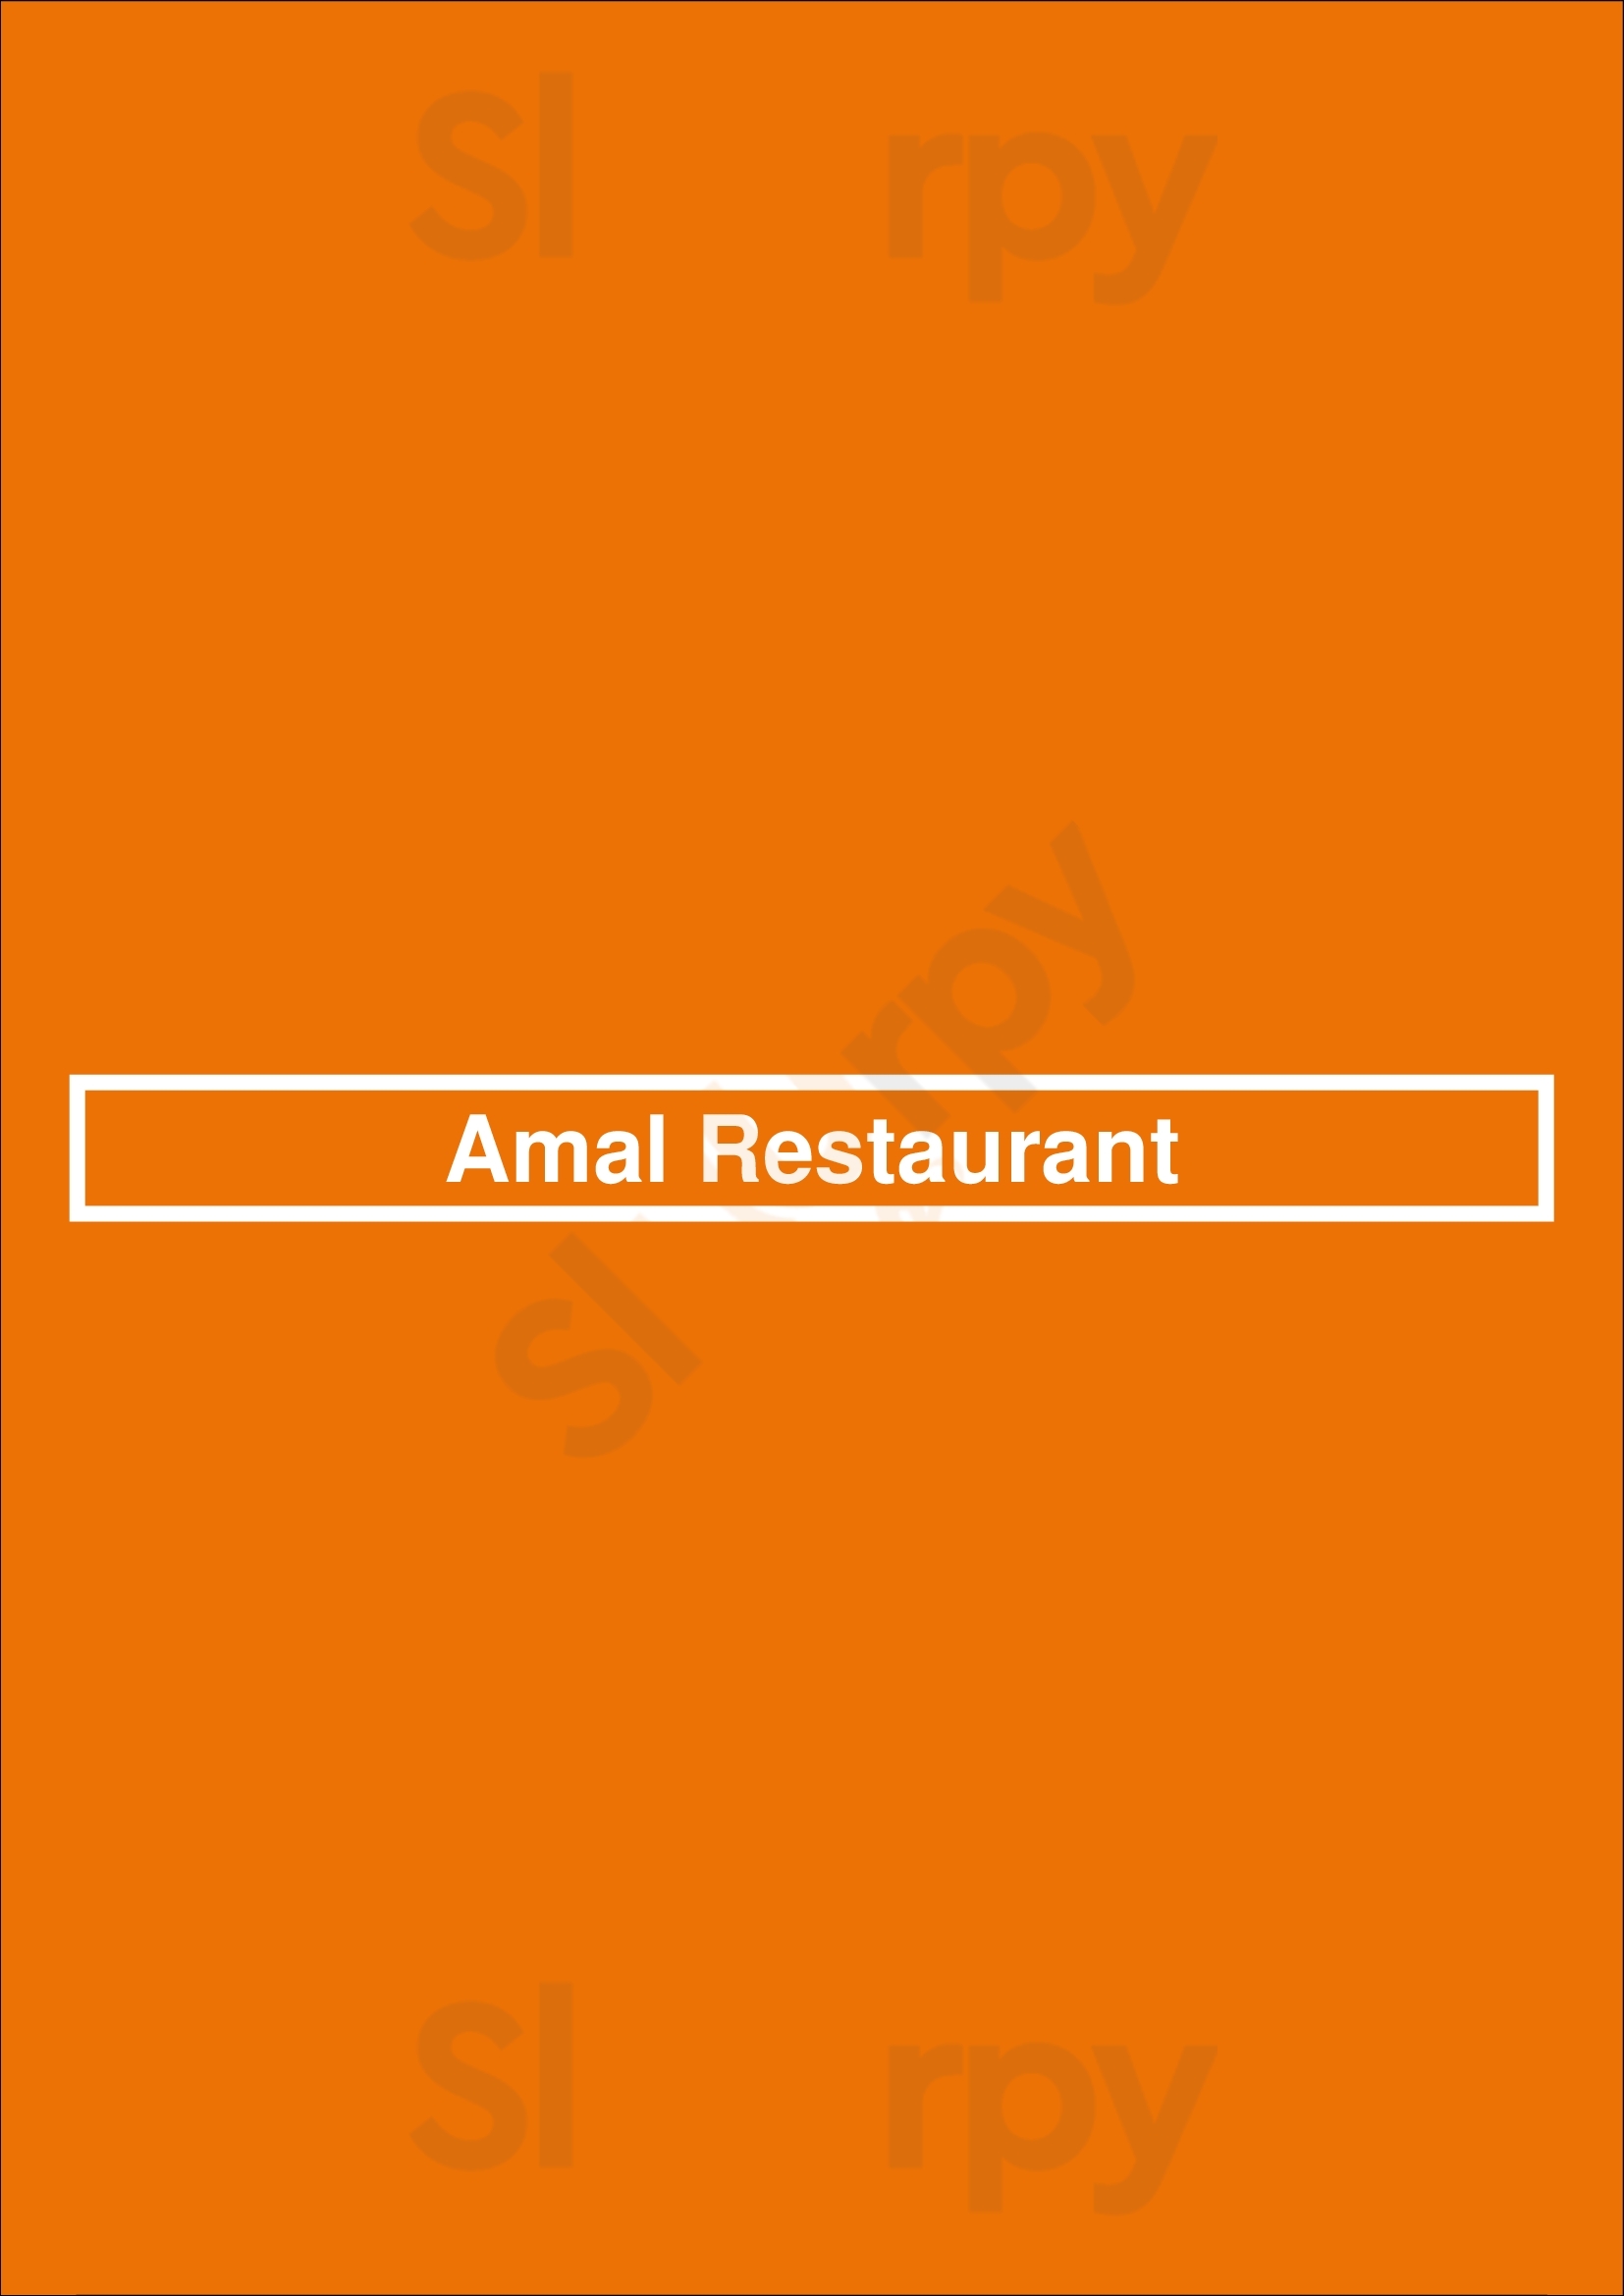 Amal Restaurant London Menu - 1